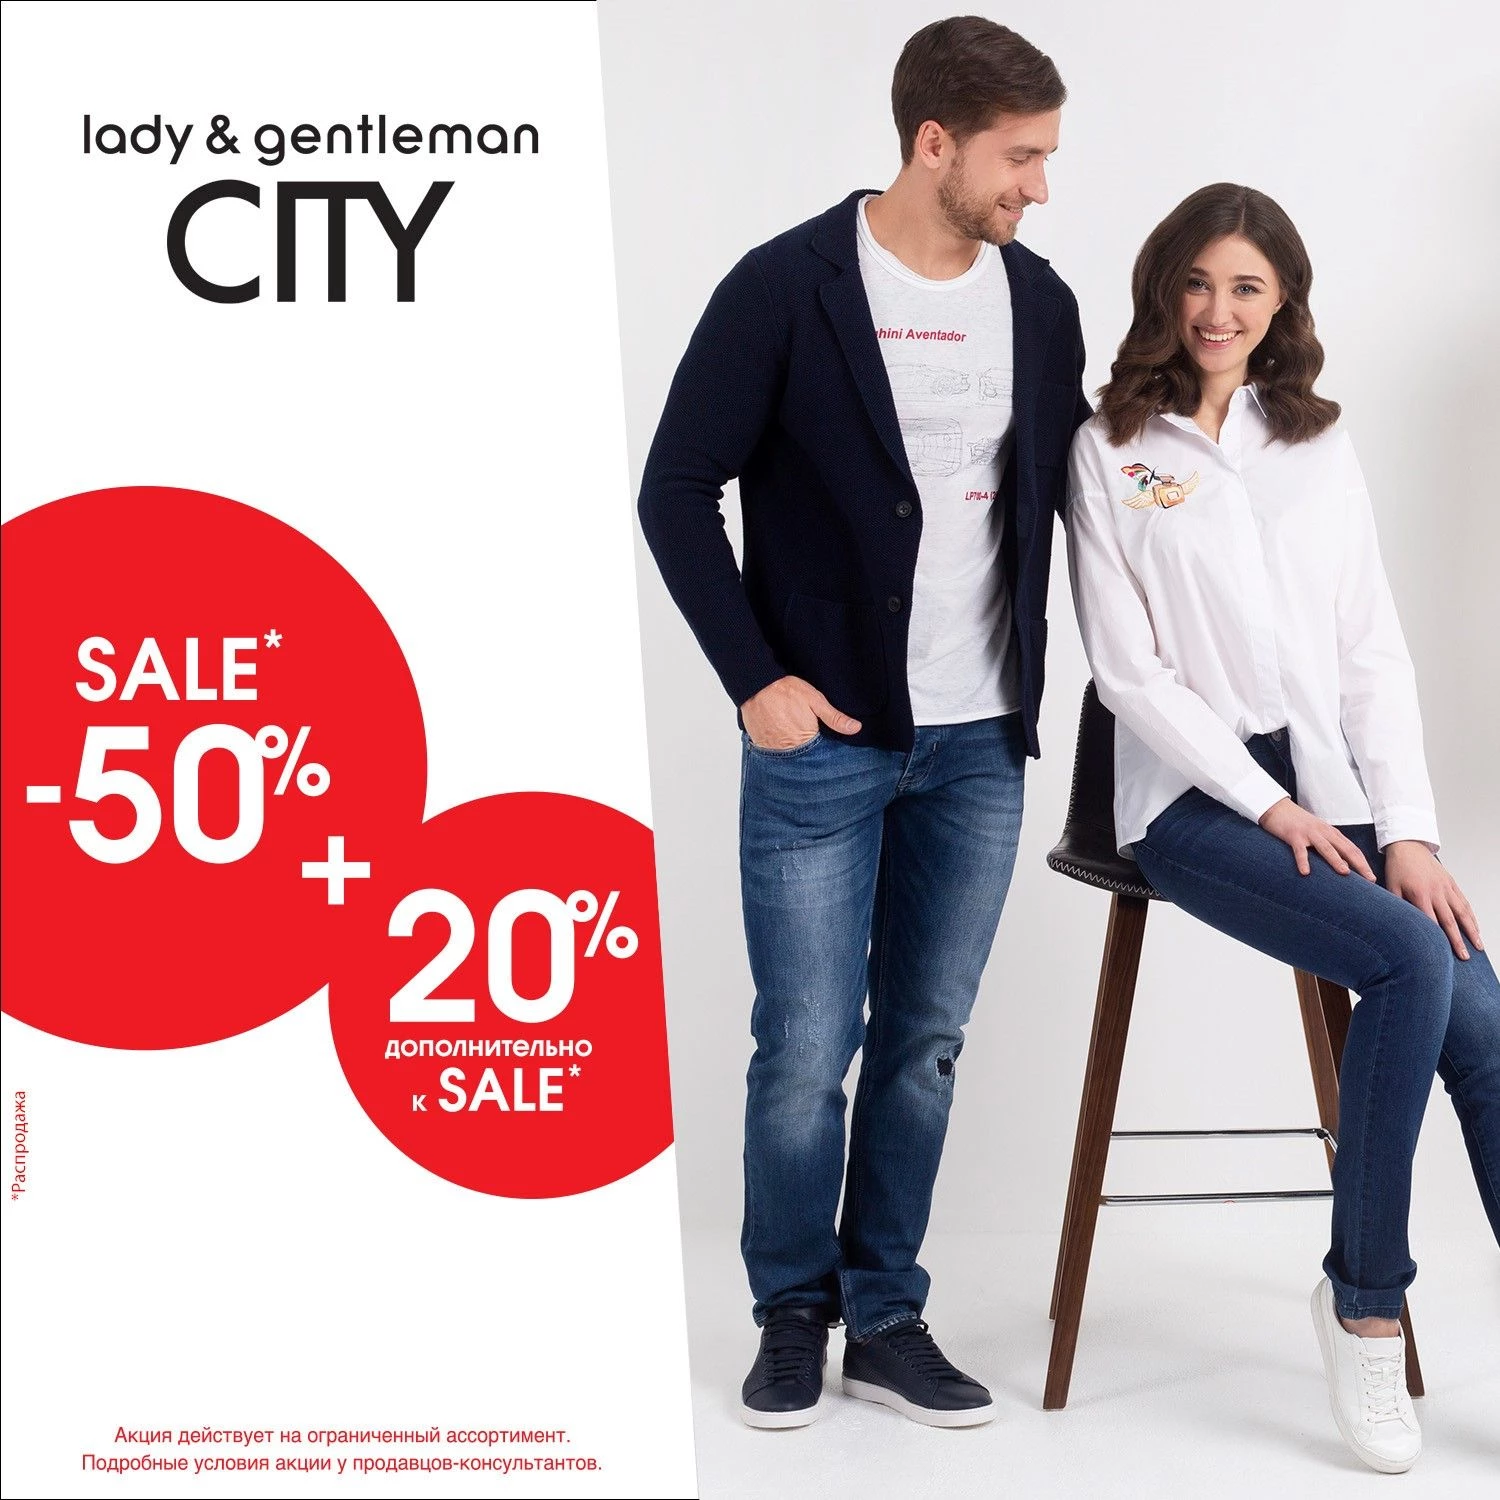 SALE 50% + 20% в lady & gentleman CITY